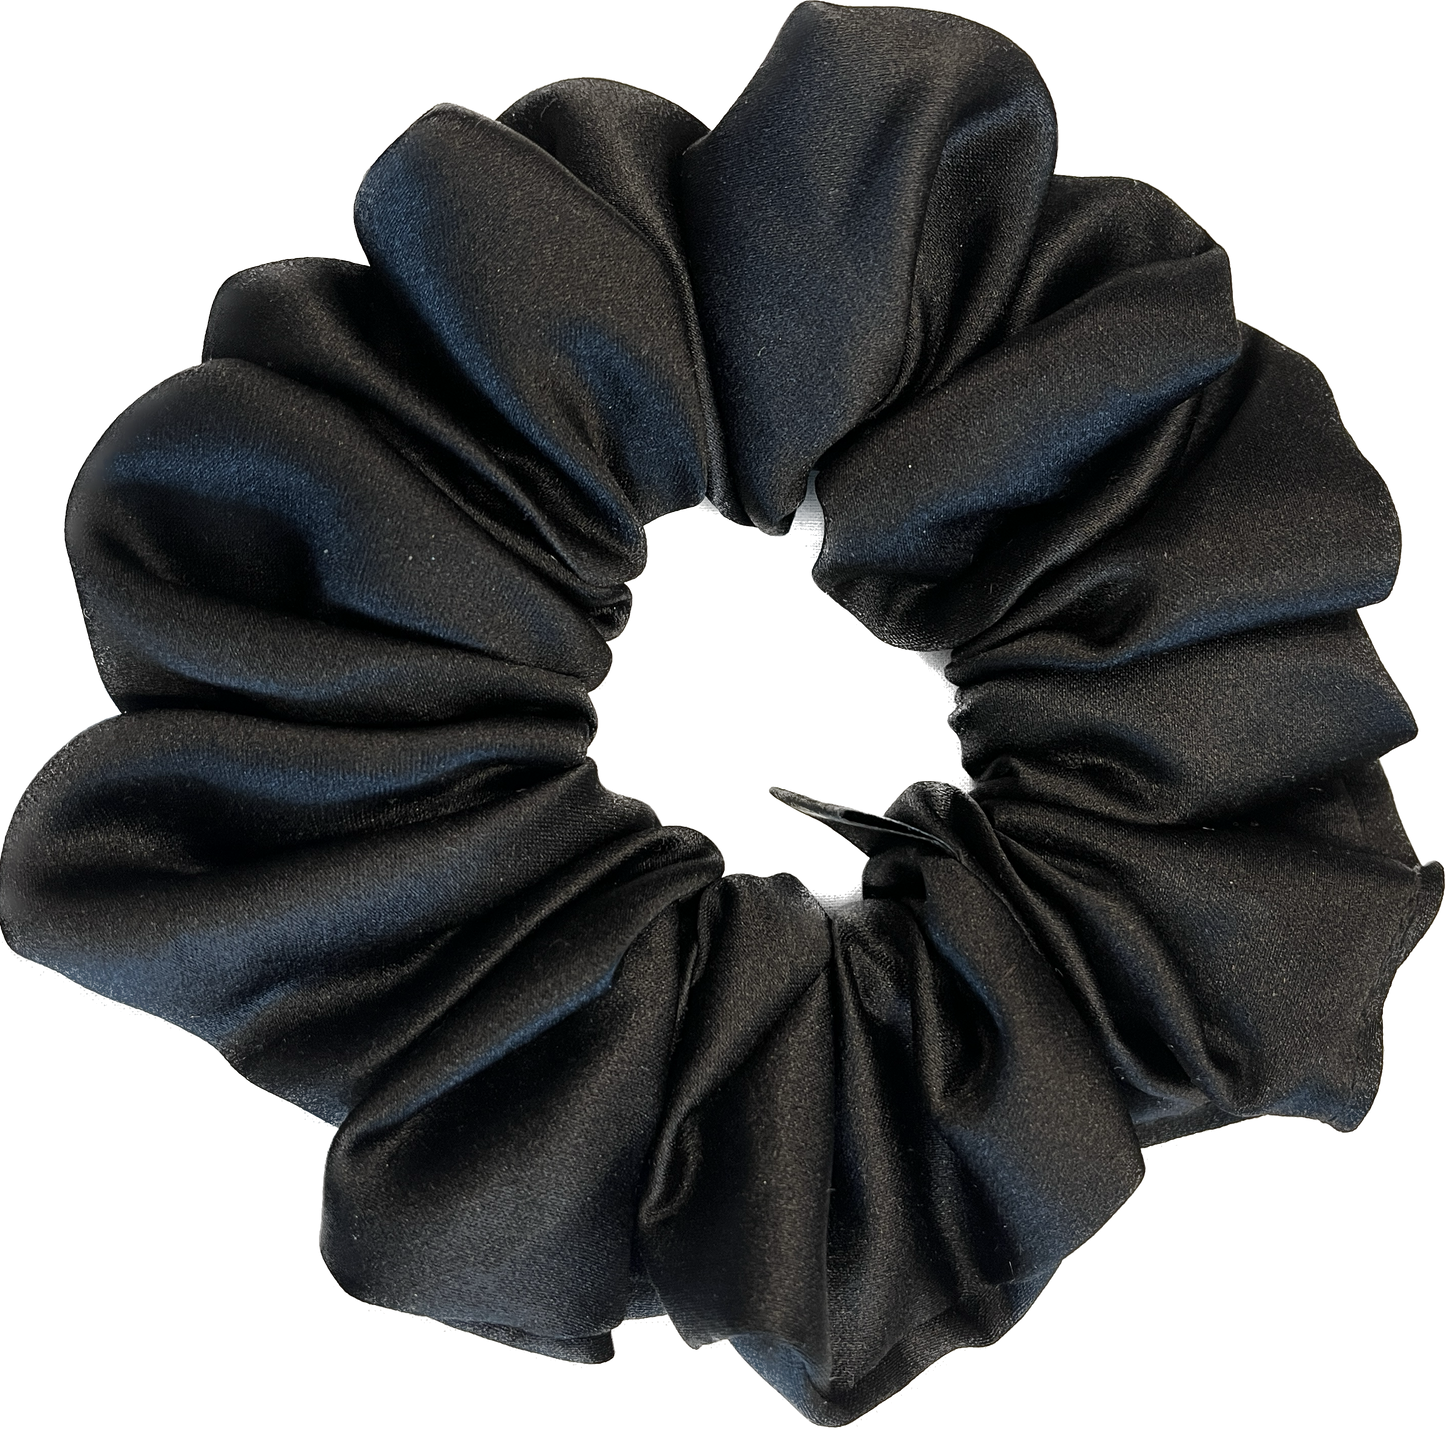 Black Satin Fluffy Scrunchie - Sleek and Stylish